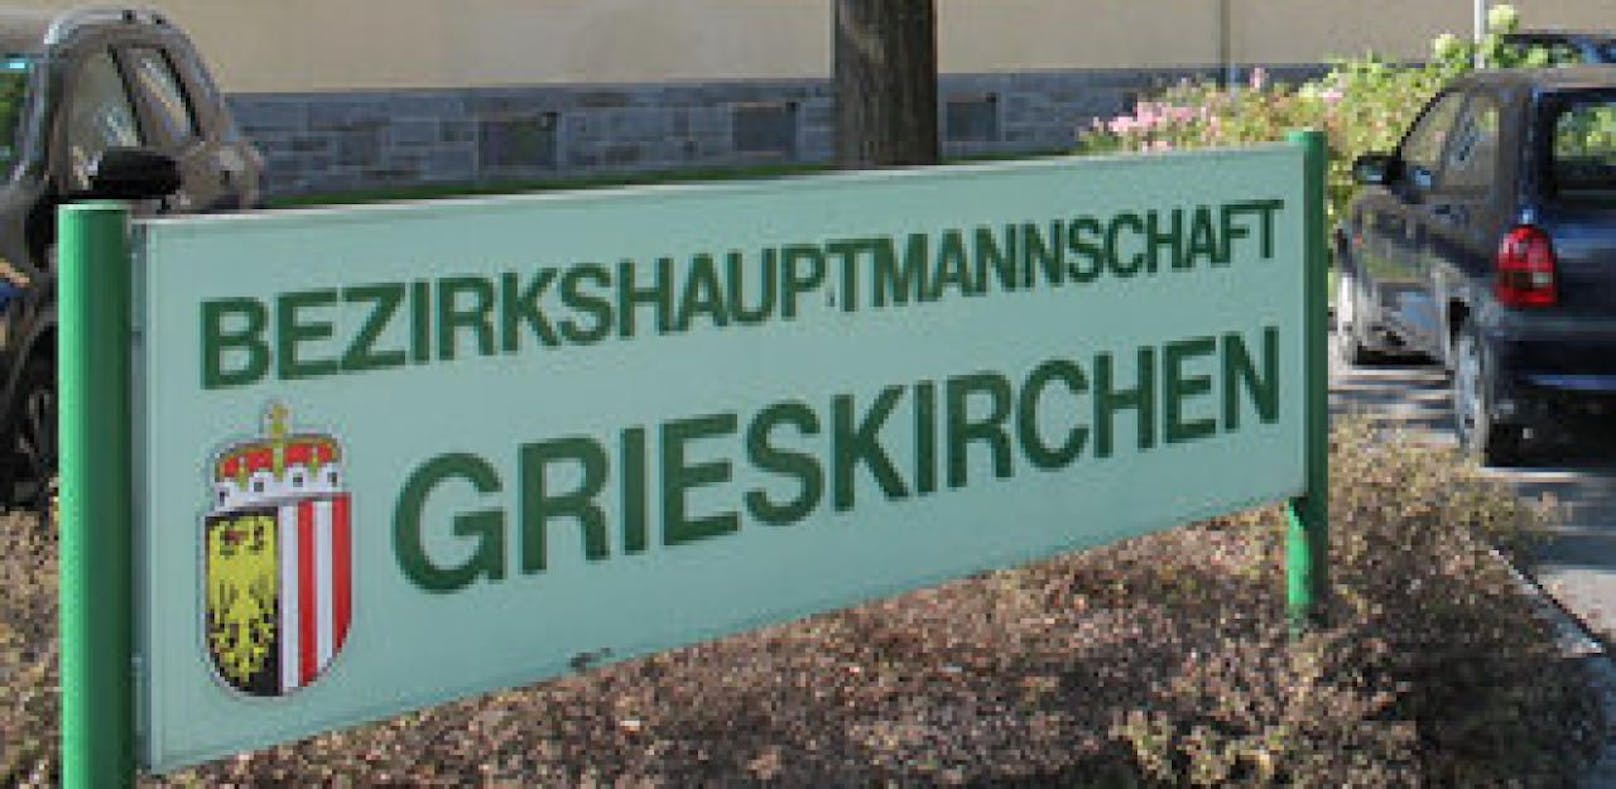 An der BH Grieskirchen/Eferding soll es einen Fall von Veruntreuung geben.